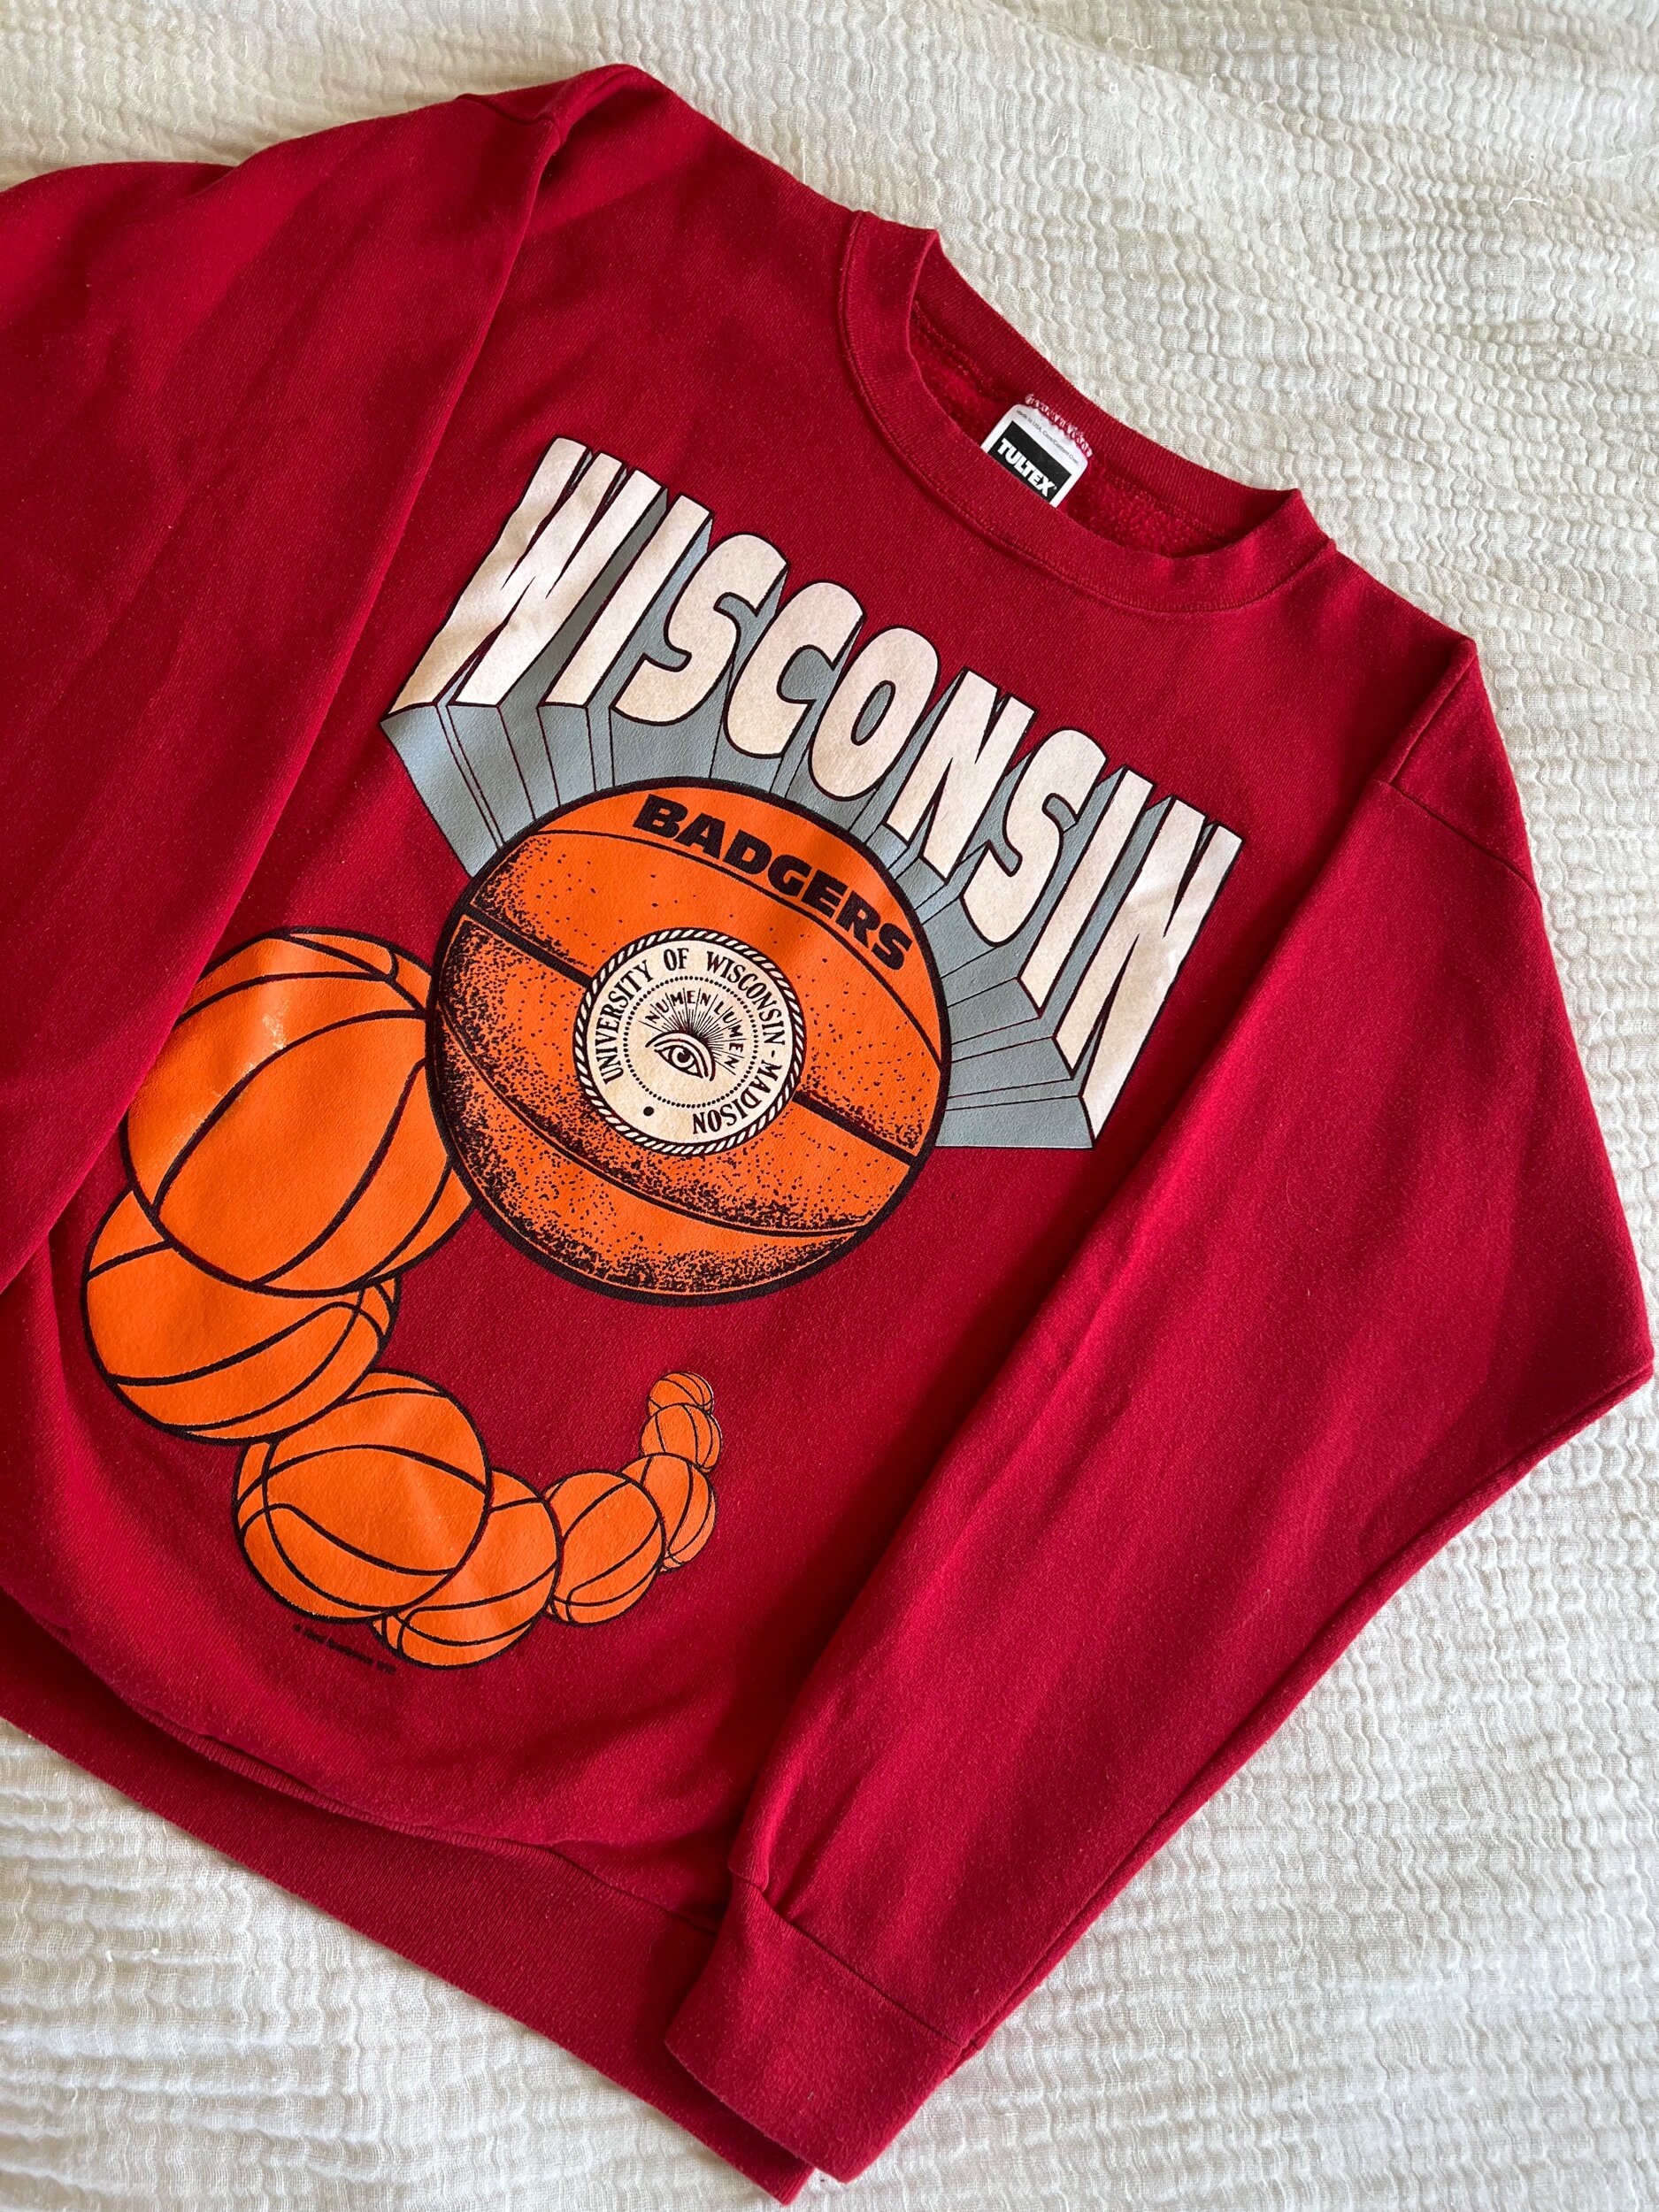 Wisconsin Badgers retro jersey